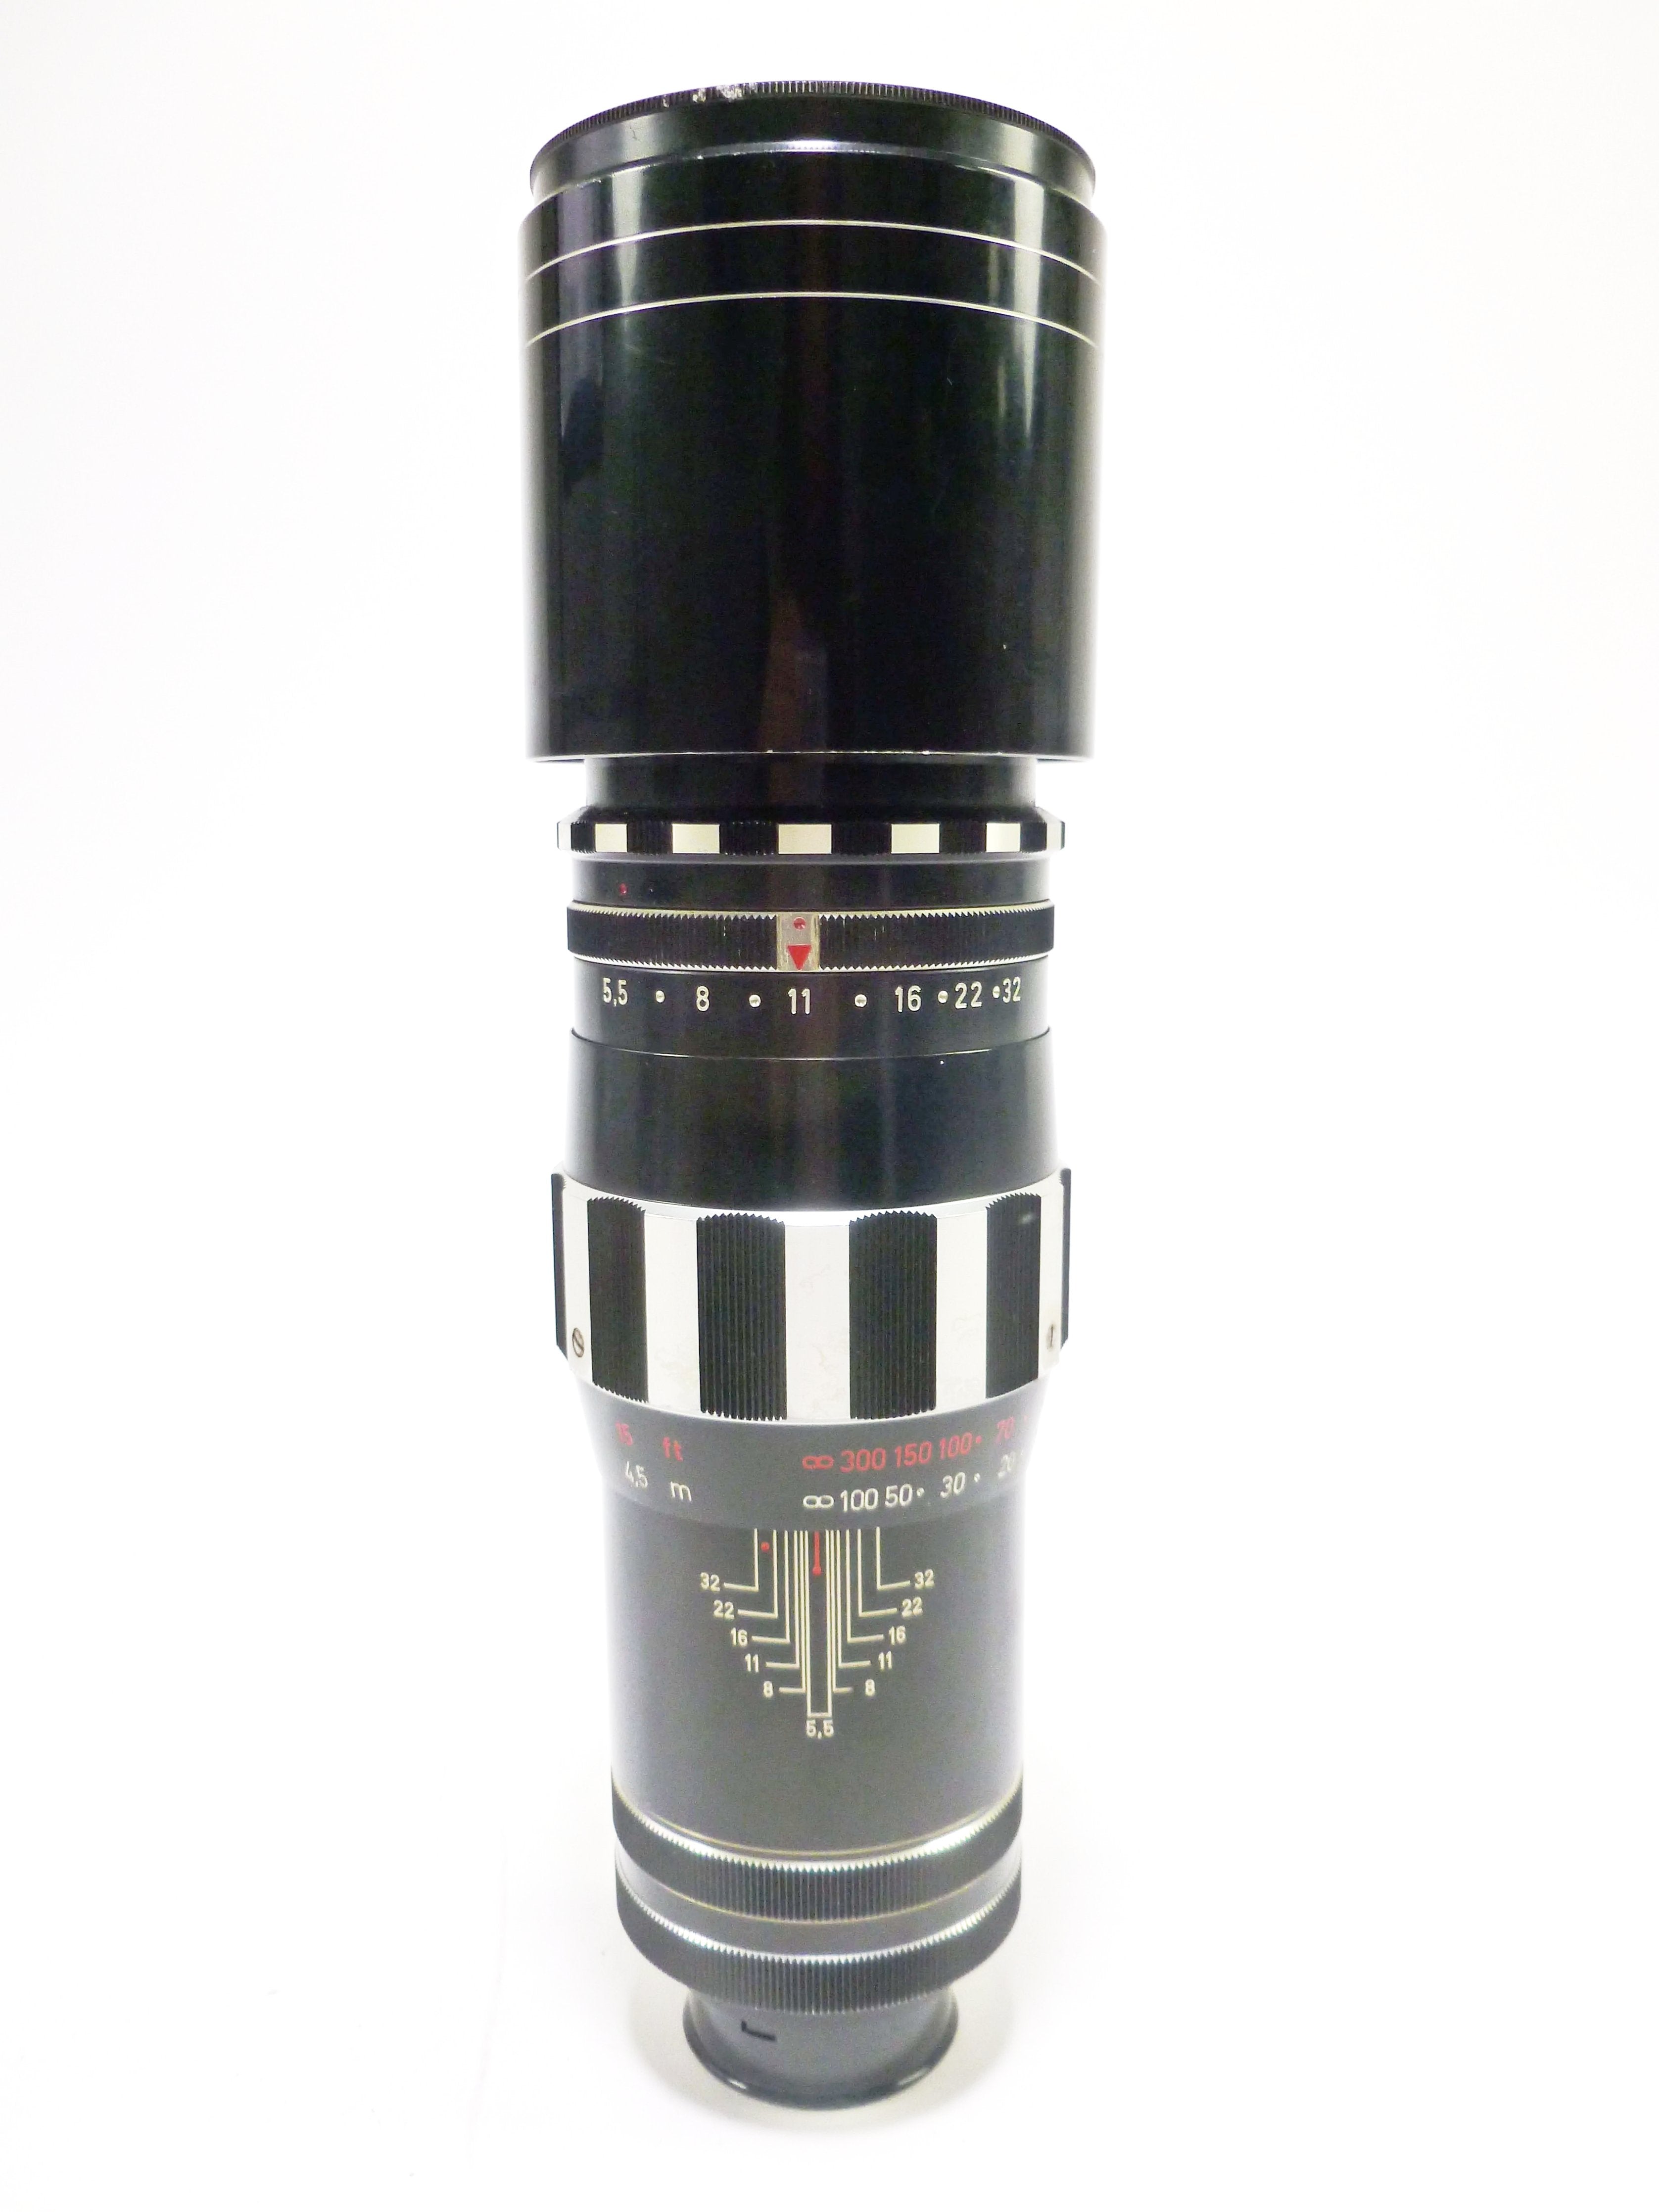 Schneider-Kreuznach Tele-Xenar 360mm f/5.5 Lens for Exakta Mount